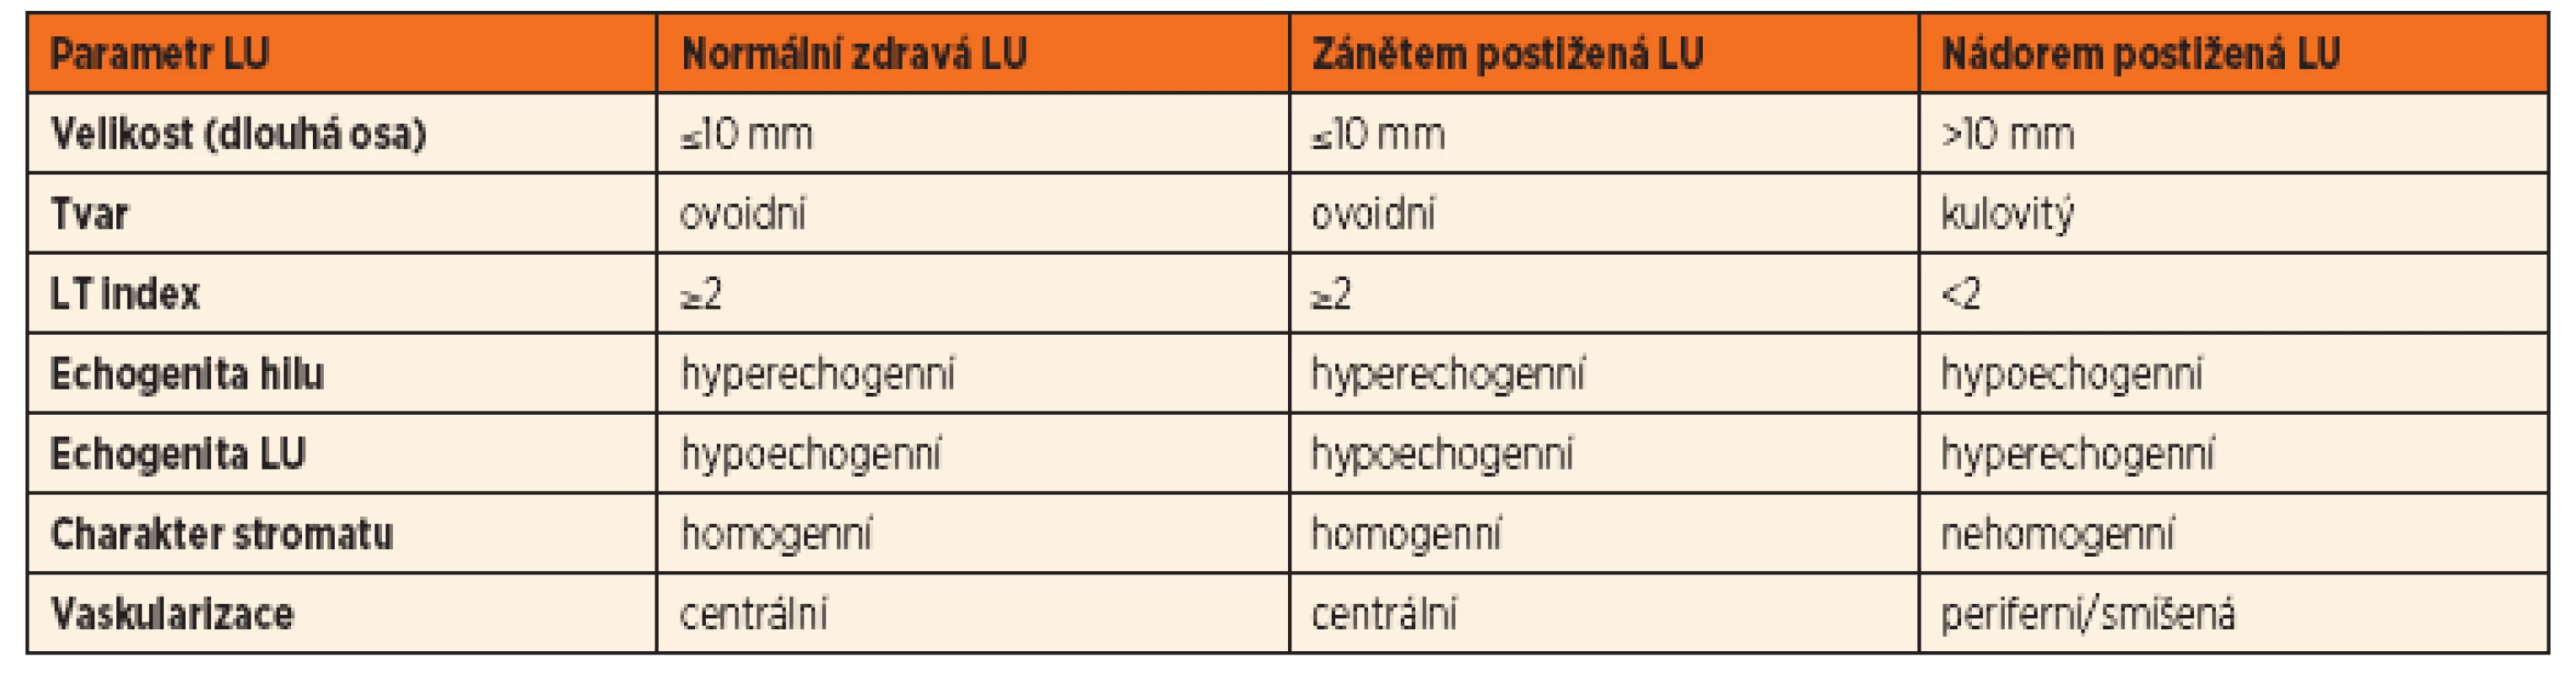 Základní popis UZ obrazu u jednotlivých typů lymfadenopatií.